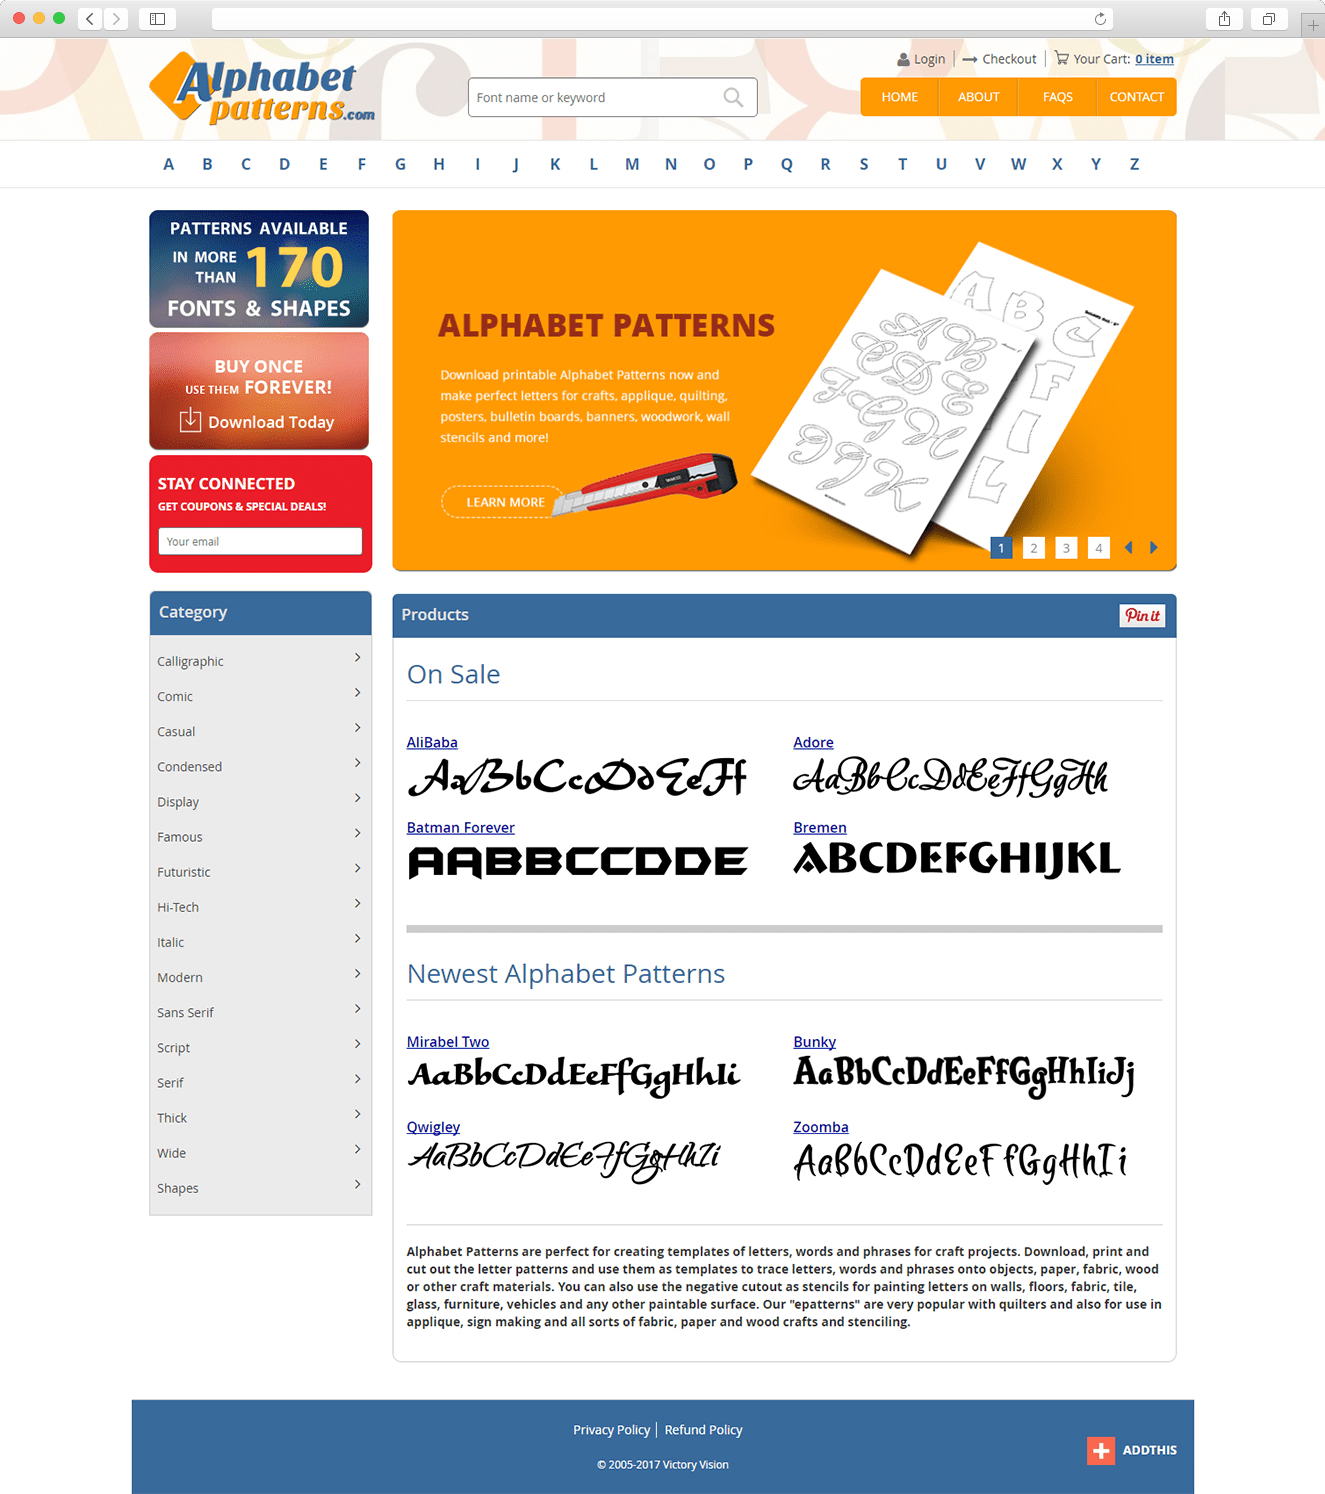 Our Works: Alphabetpatterns.com 